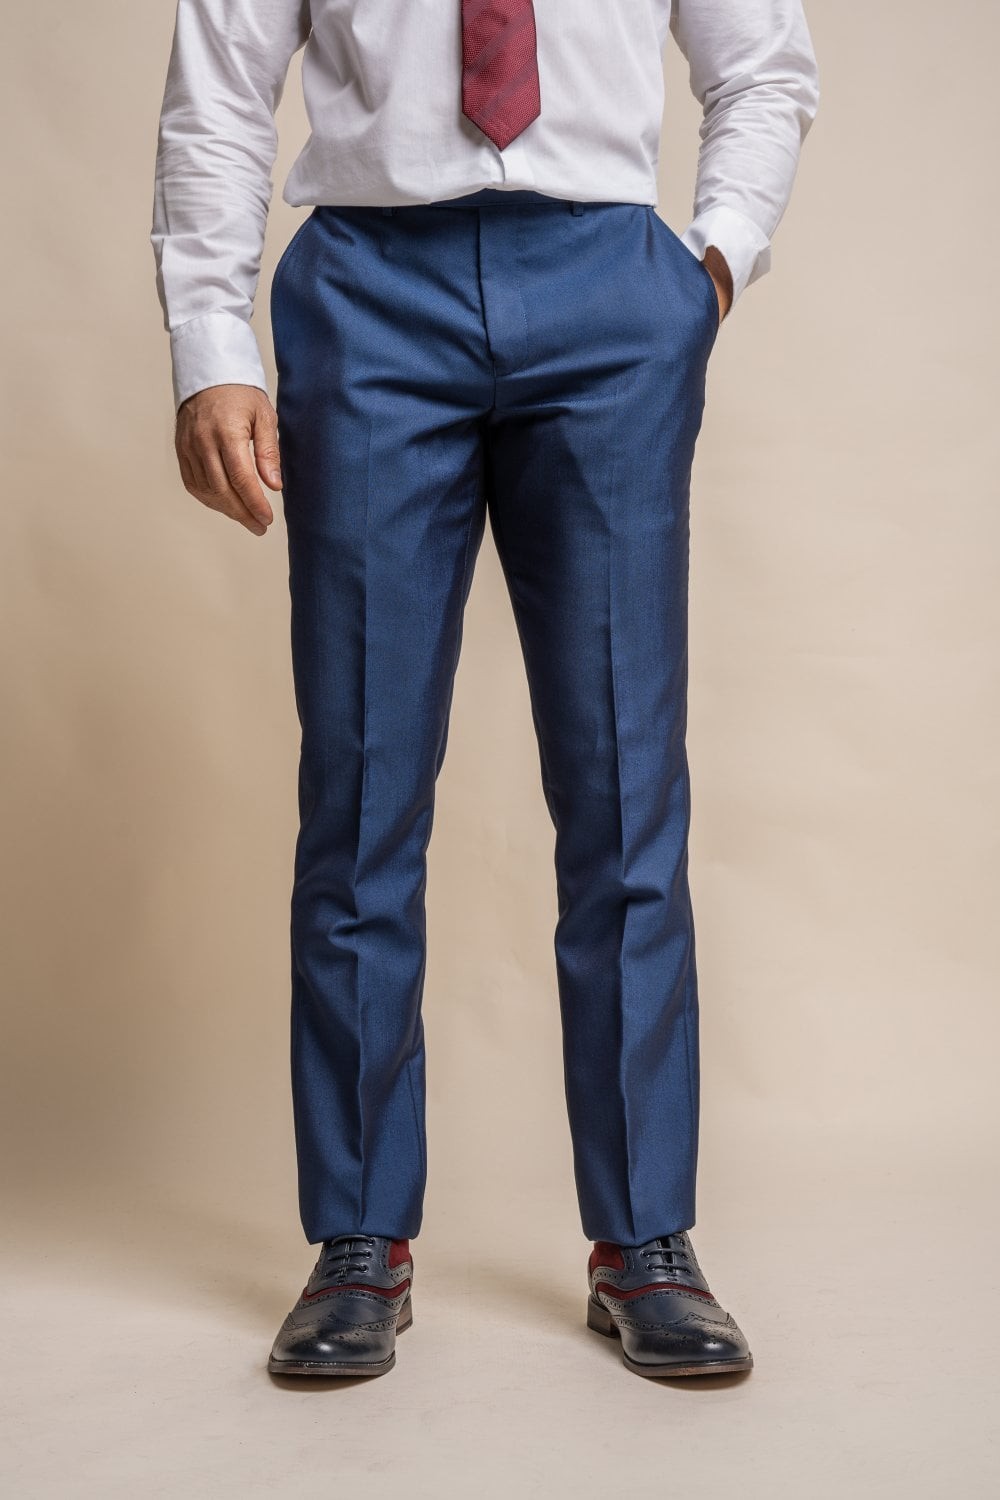 Men's Slim Fit Formal Royal Blue Pants - FORD